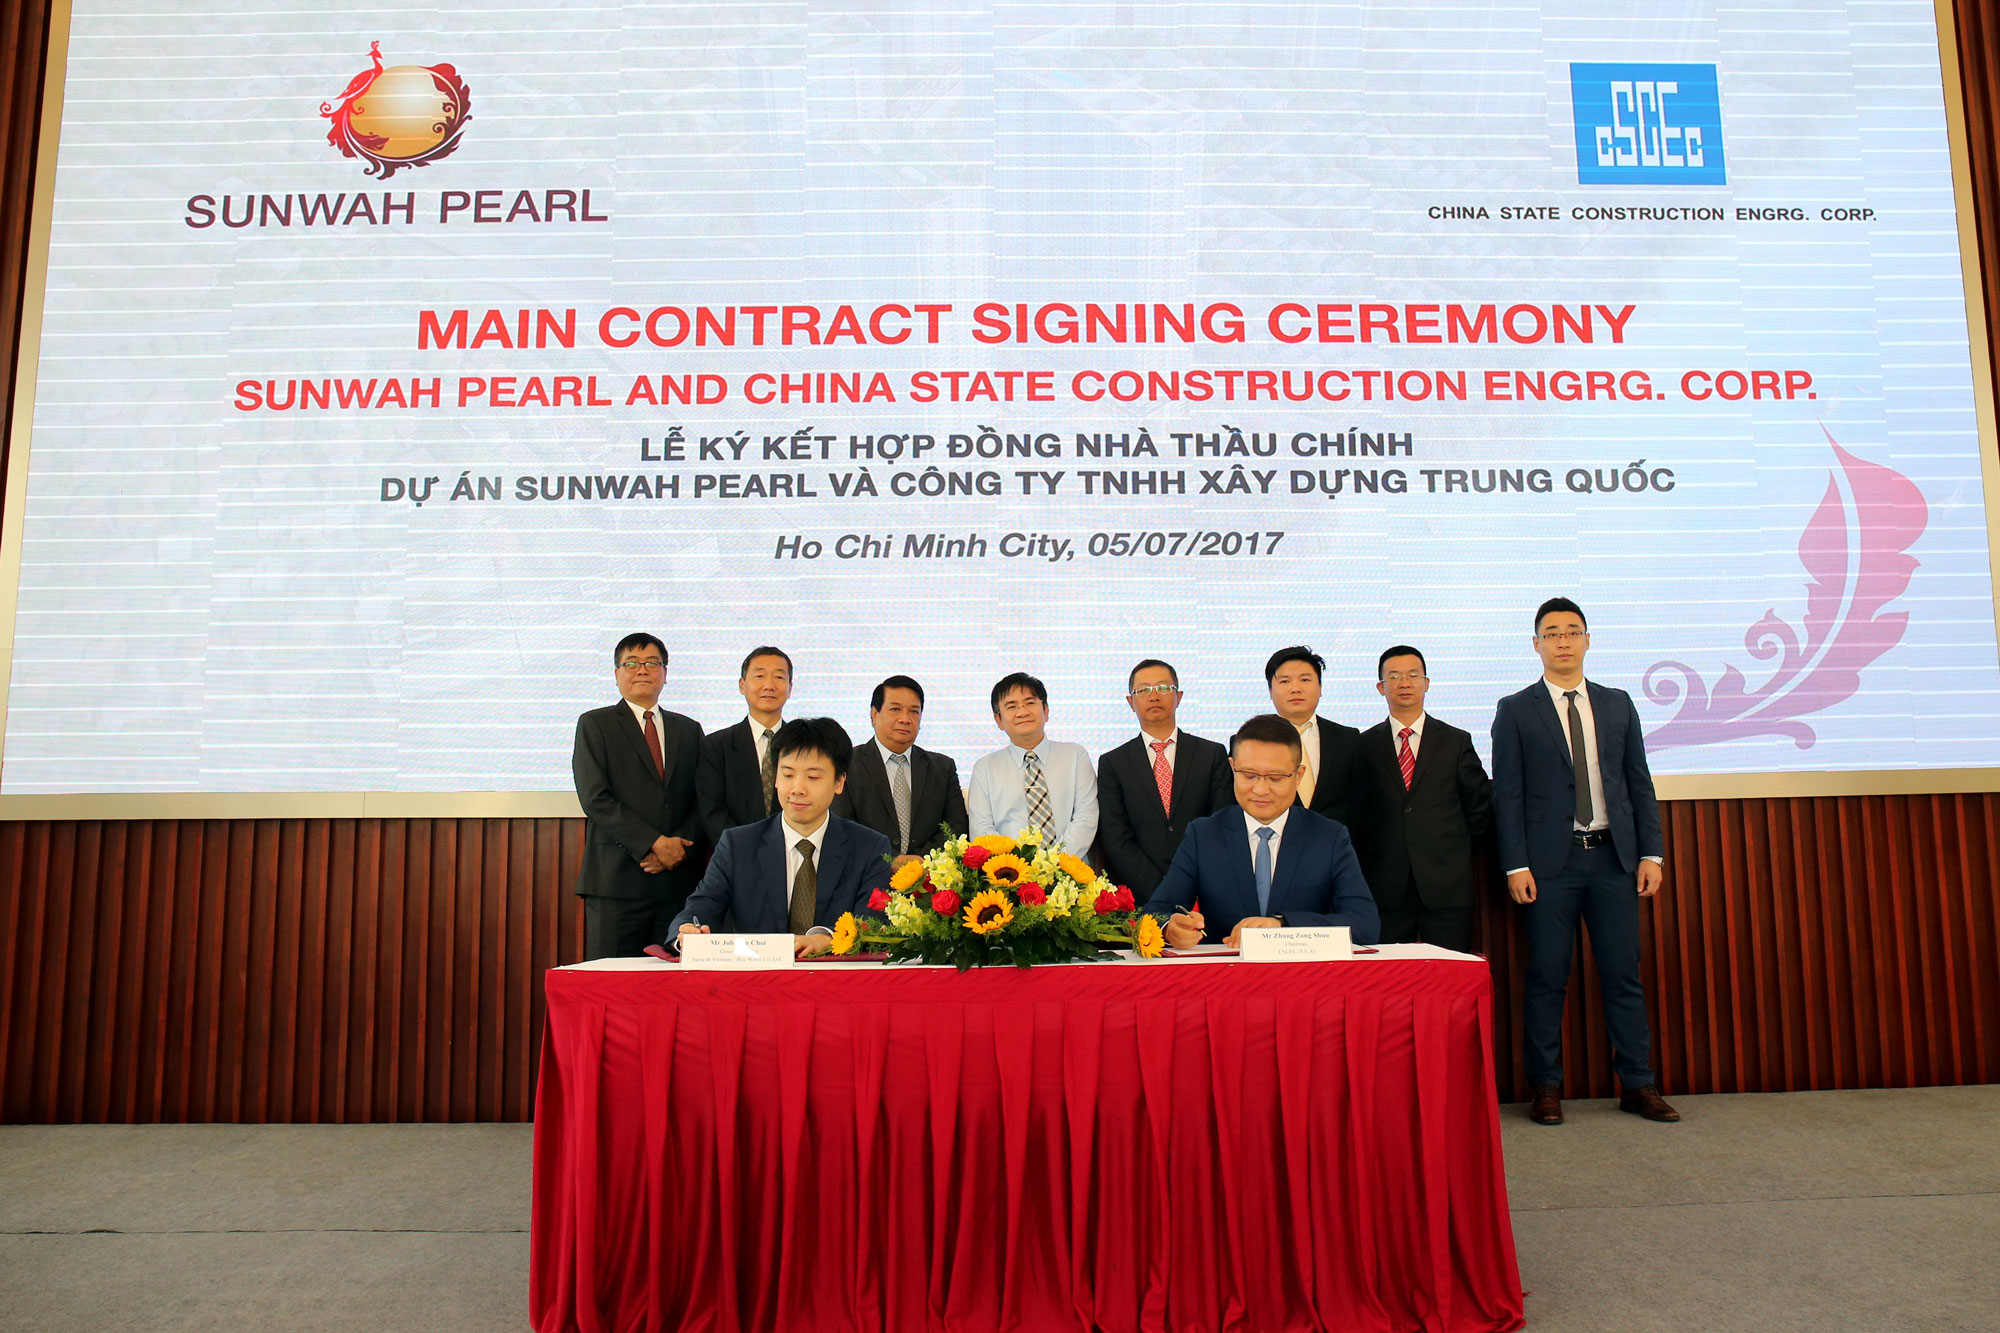 Tập đoàn Sunwah kí kết Hợp đồng Nhà thầu chính cho Dự án Sunwah Pearl với Công ty TNHH Xây dựng Trung Quốc (CSCEC)